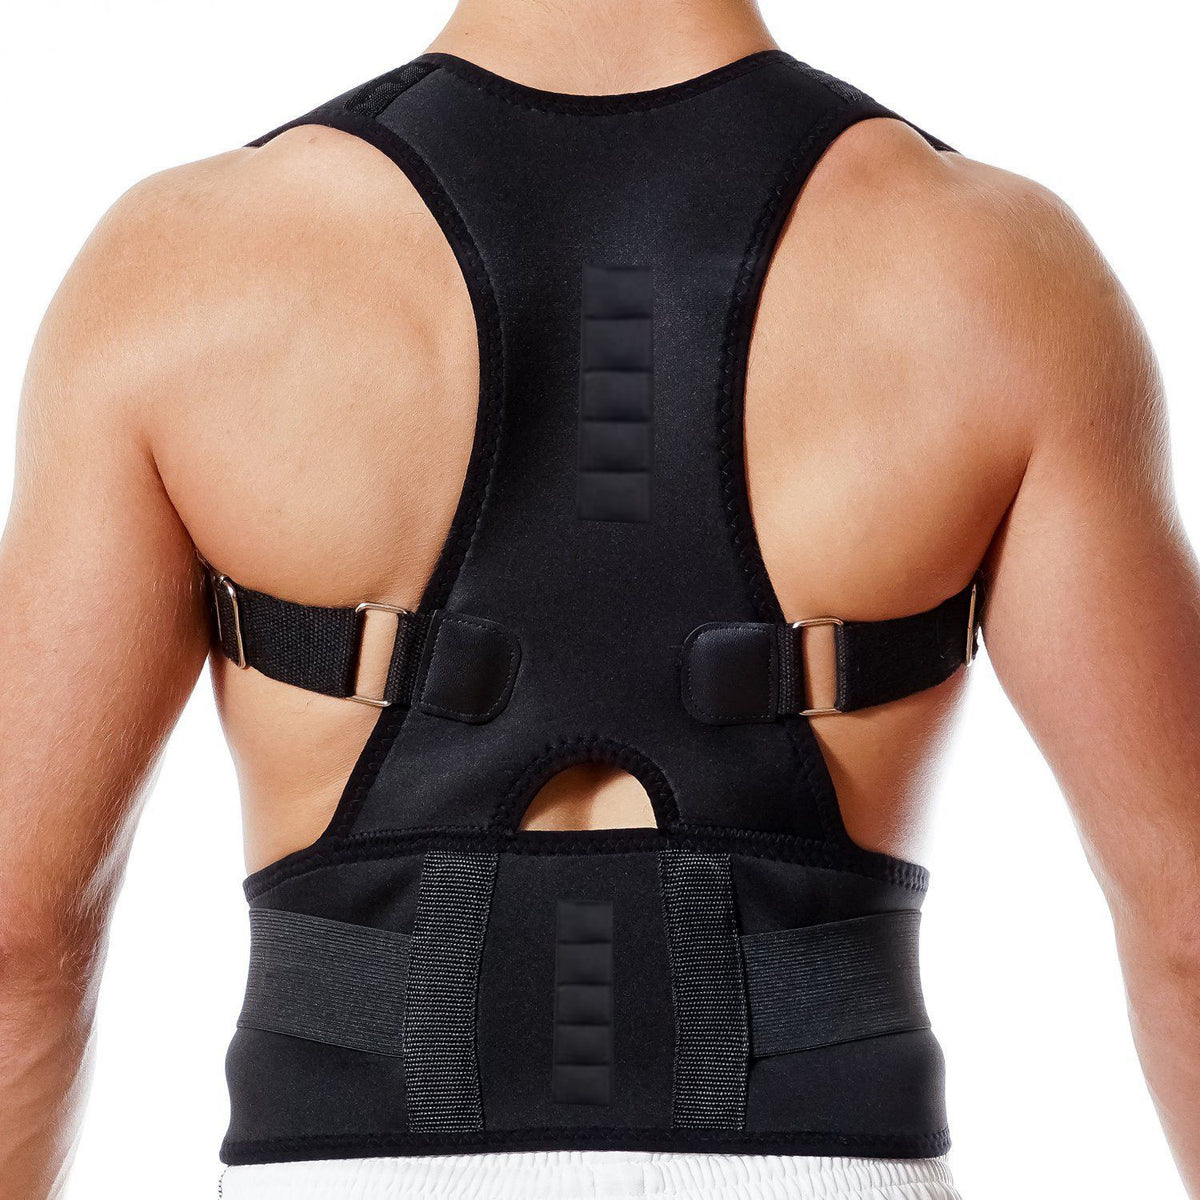 Adjustable Posture Corrector Medical Back Brace Shoulder Support